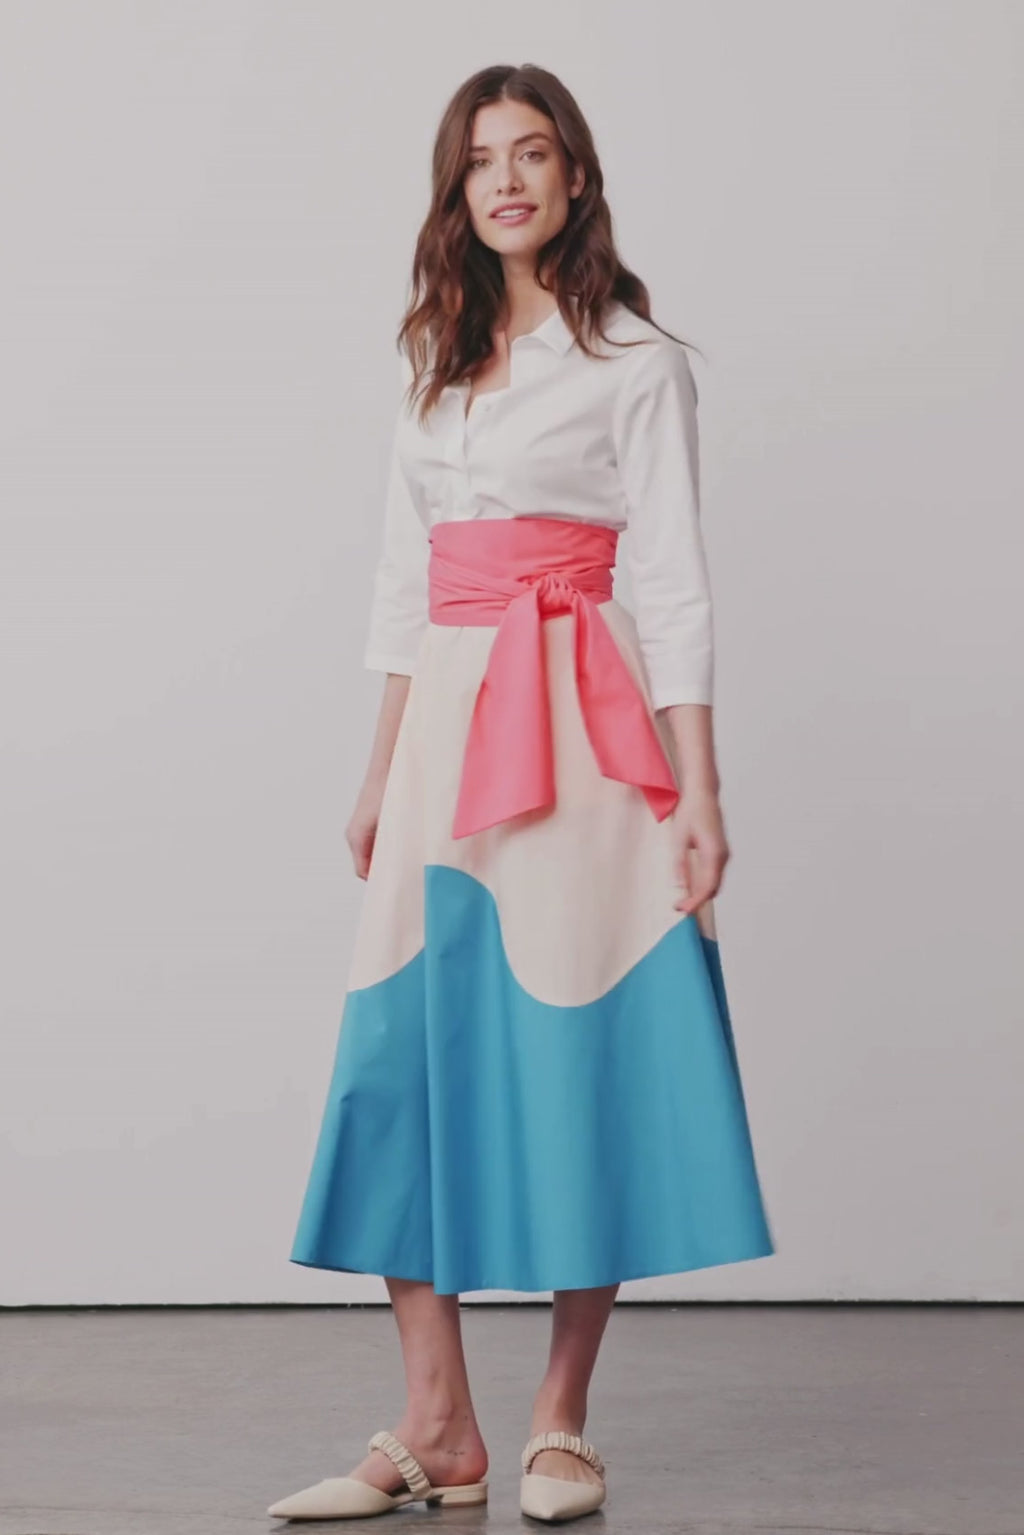 Model dreht sich in einem Blusenkleid mit Colorblock-Farben Rosa, Apricot und Blau